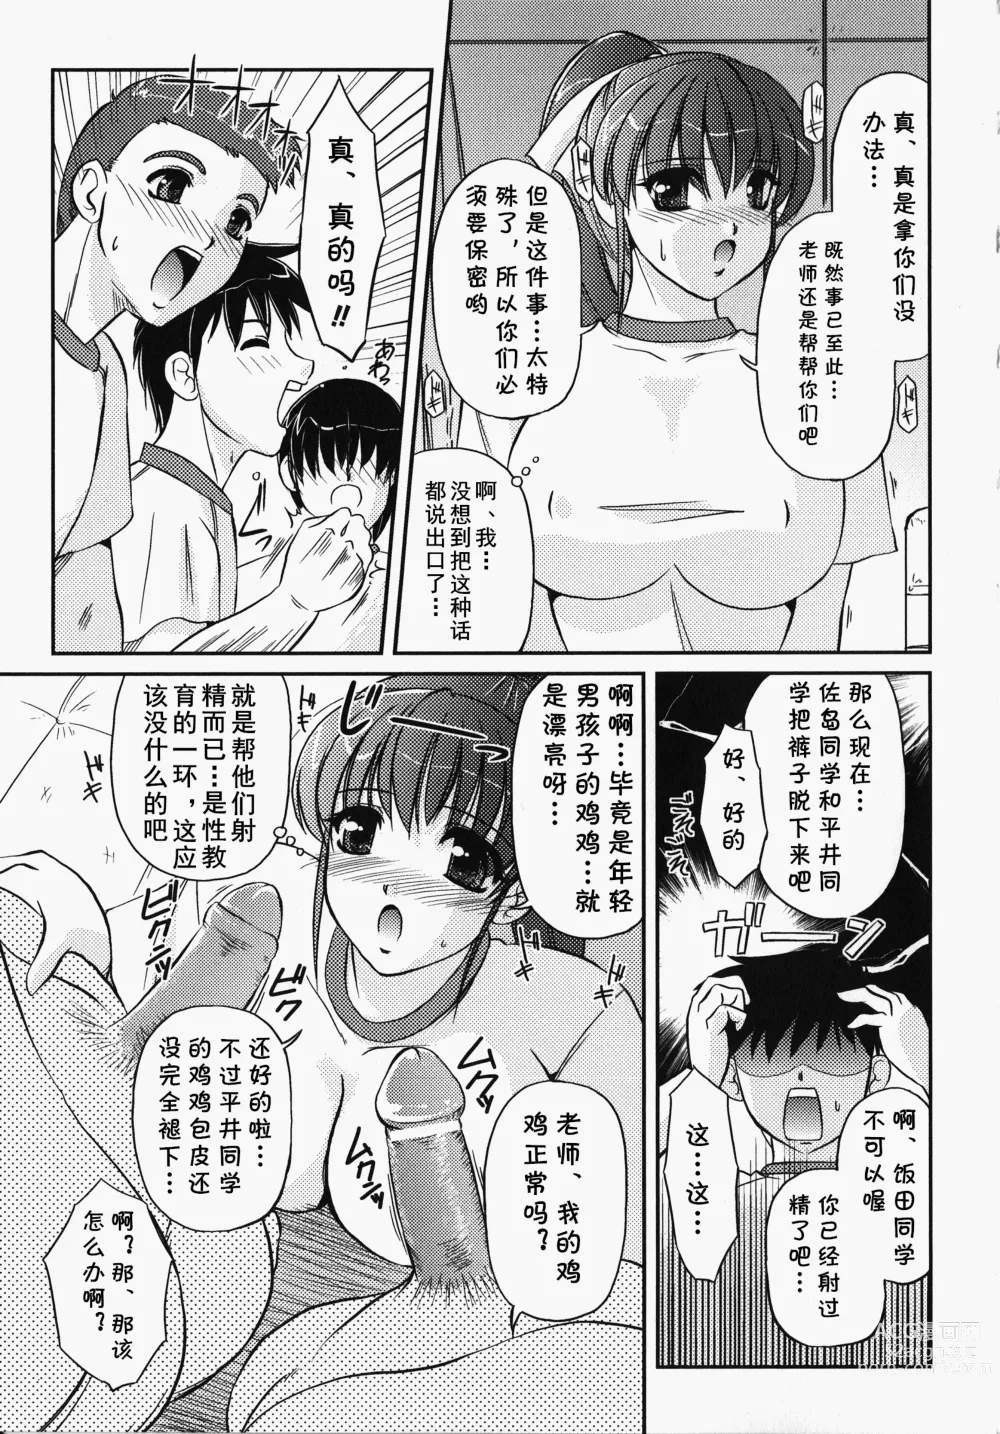 Page 4 of manga Bokura no Sensei  to  Himitsu  Jisshuu